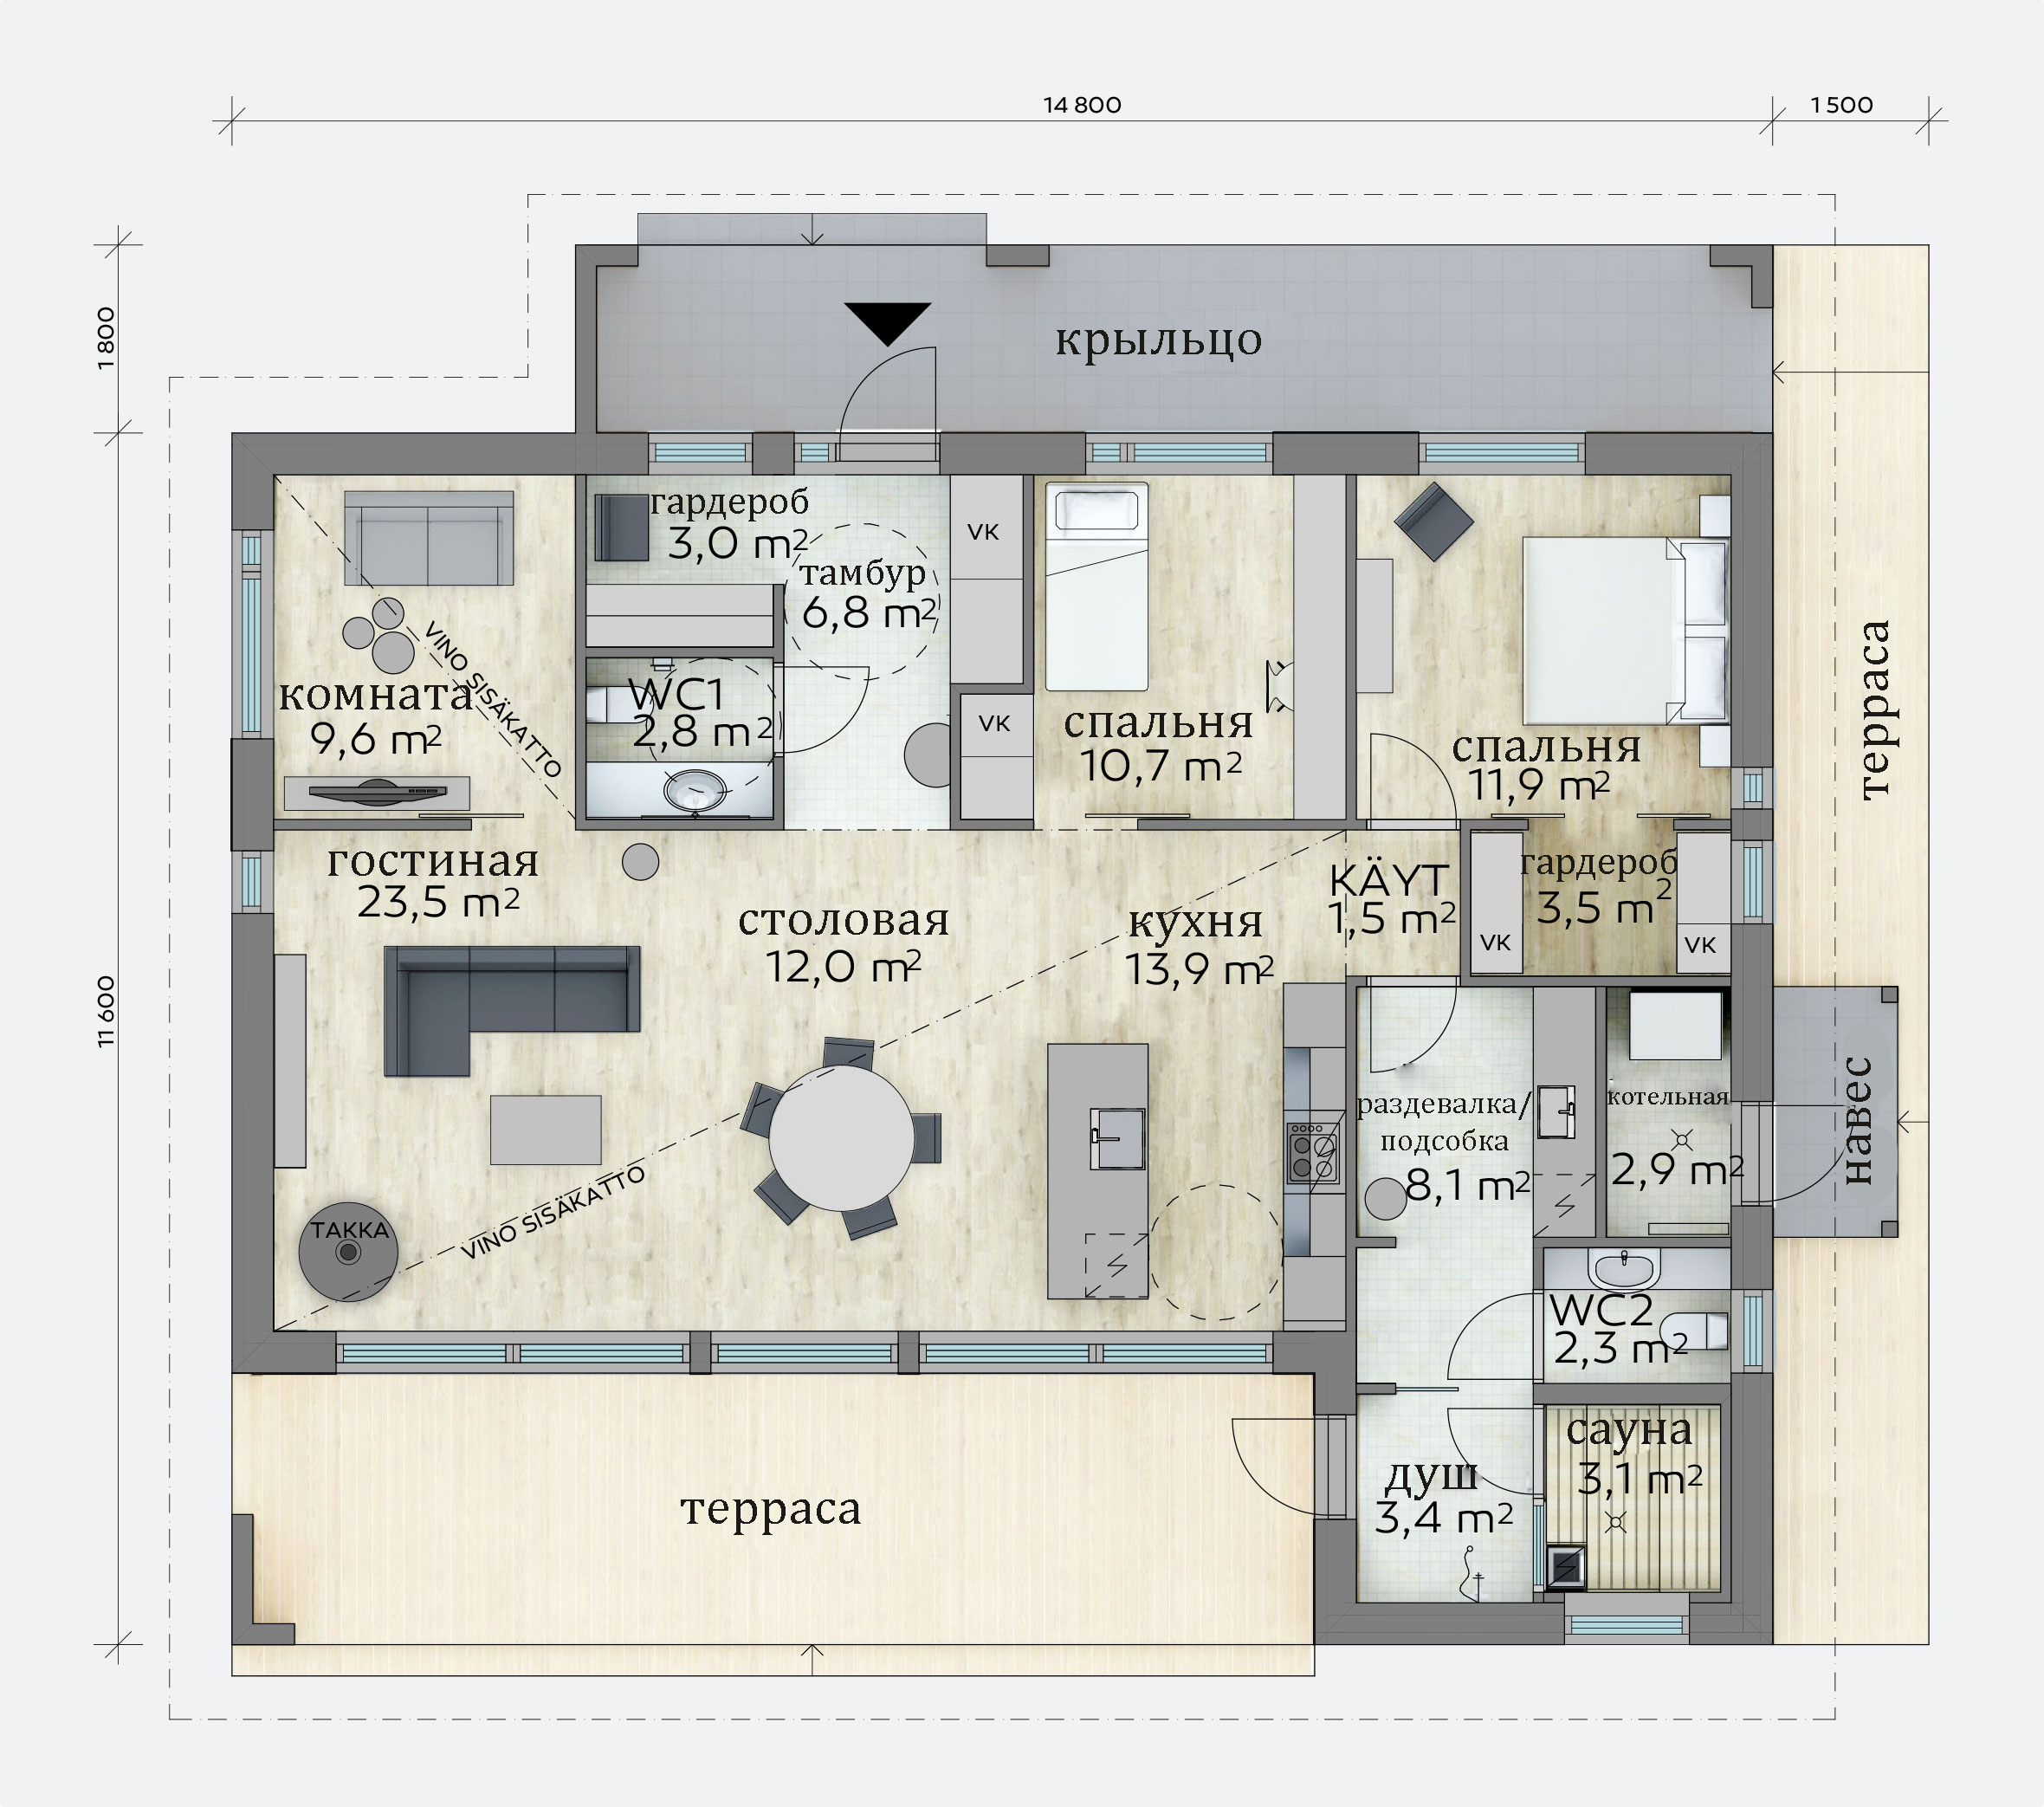 Пример планировки дома с минимальным количеством коридоров